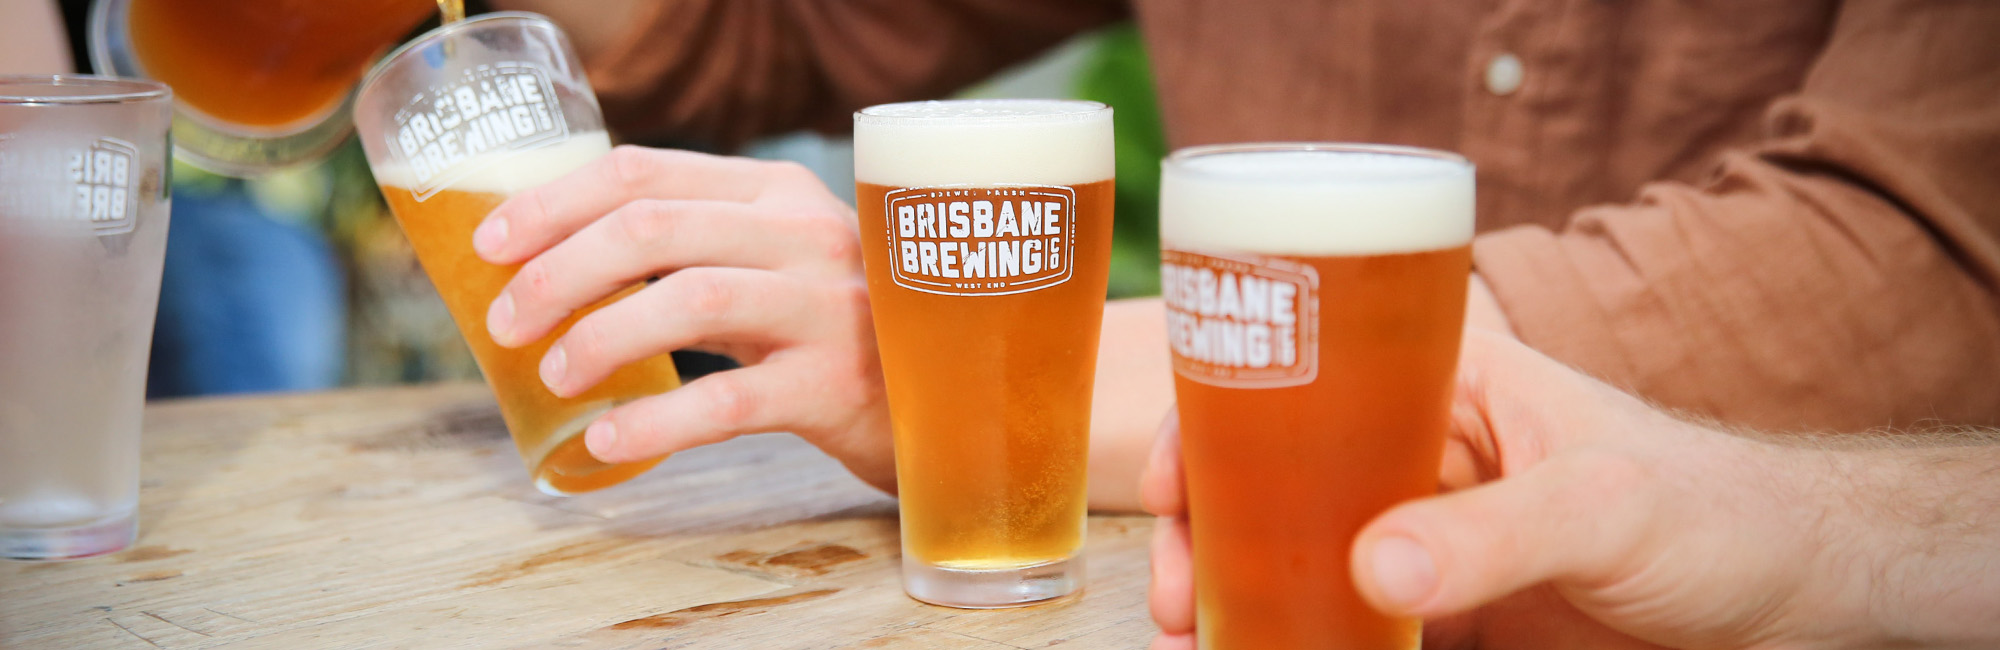 Best Beer Brisbane